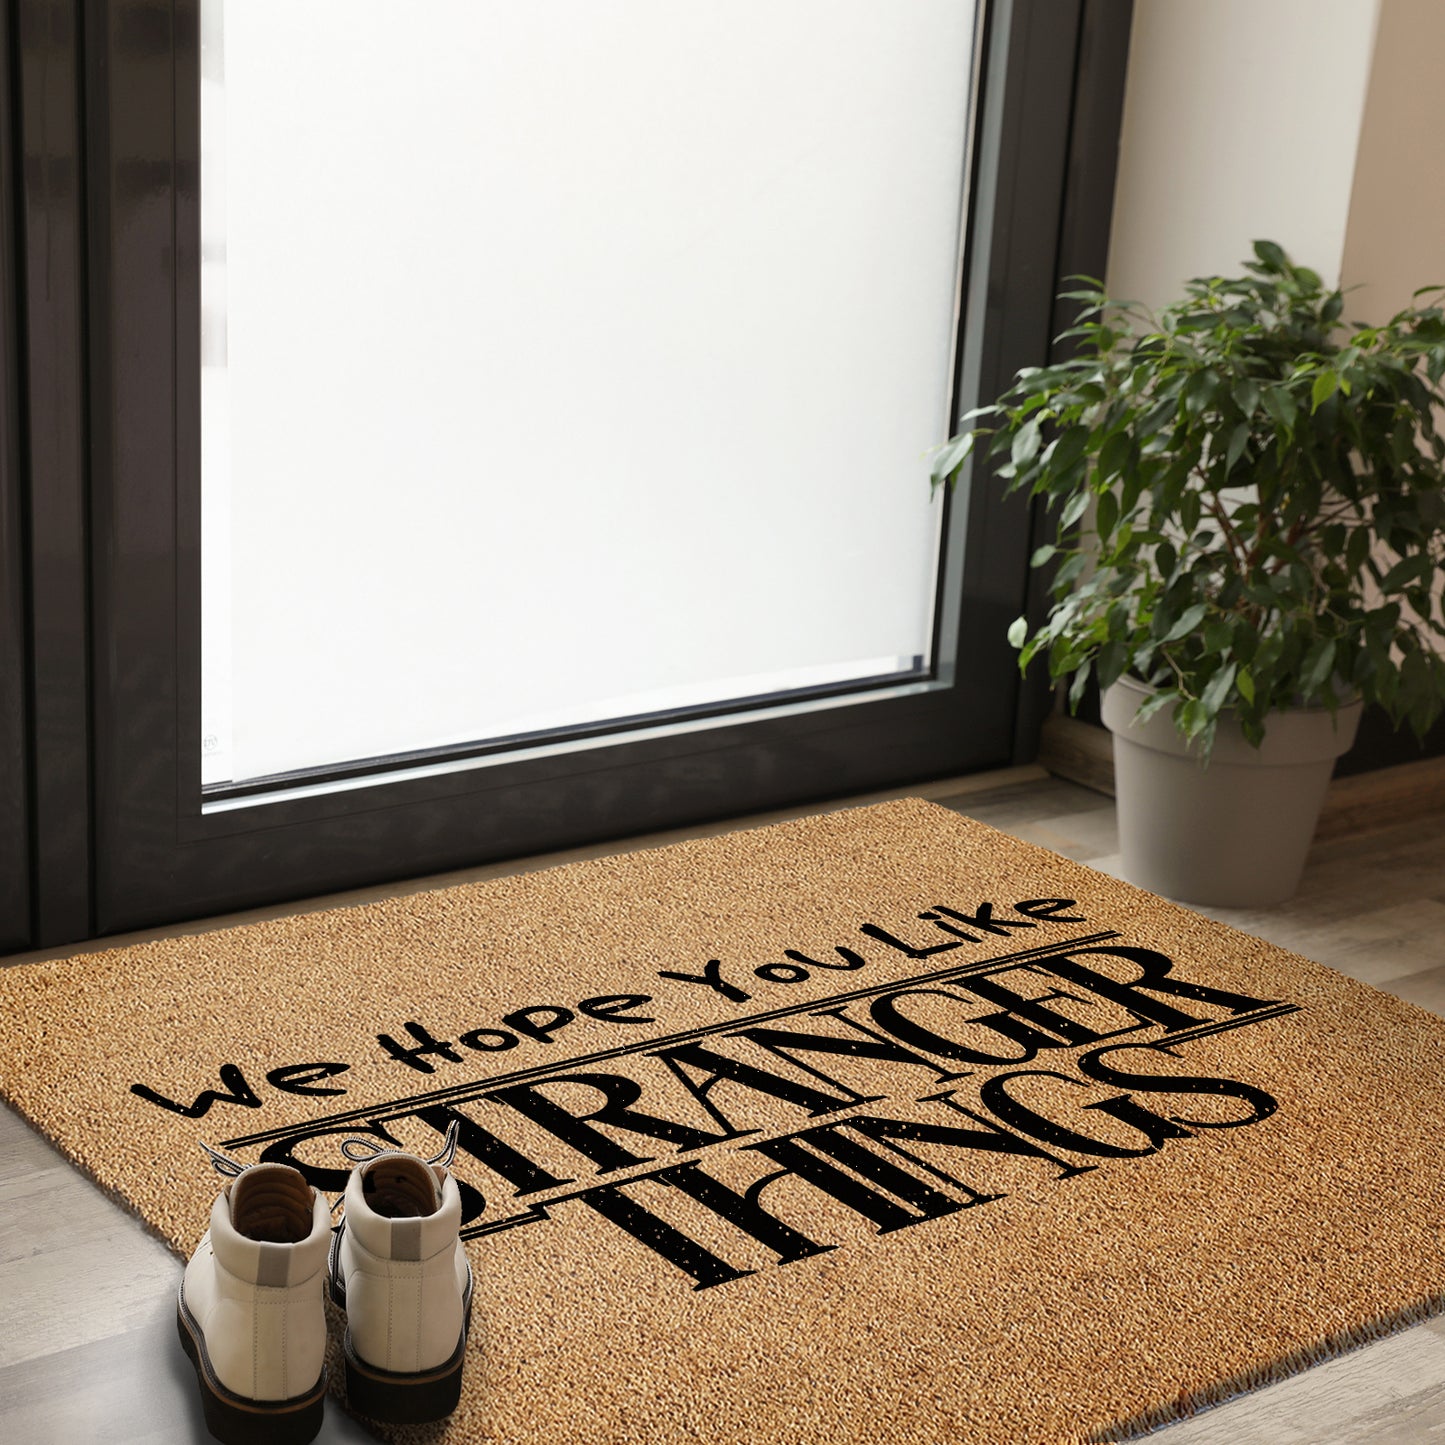 Coir Doormat - I Hope You Like Stranger Things